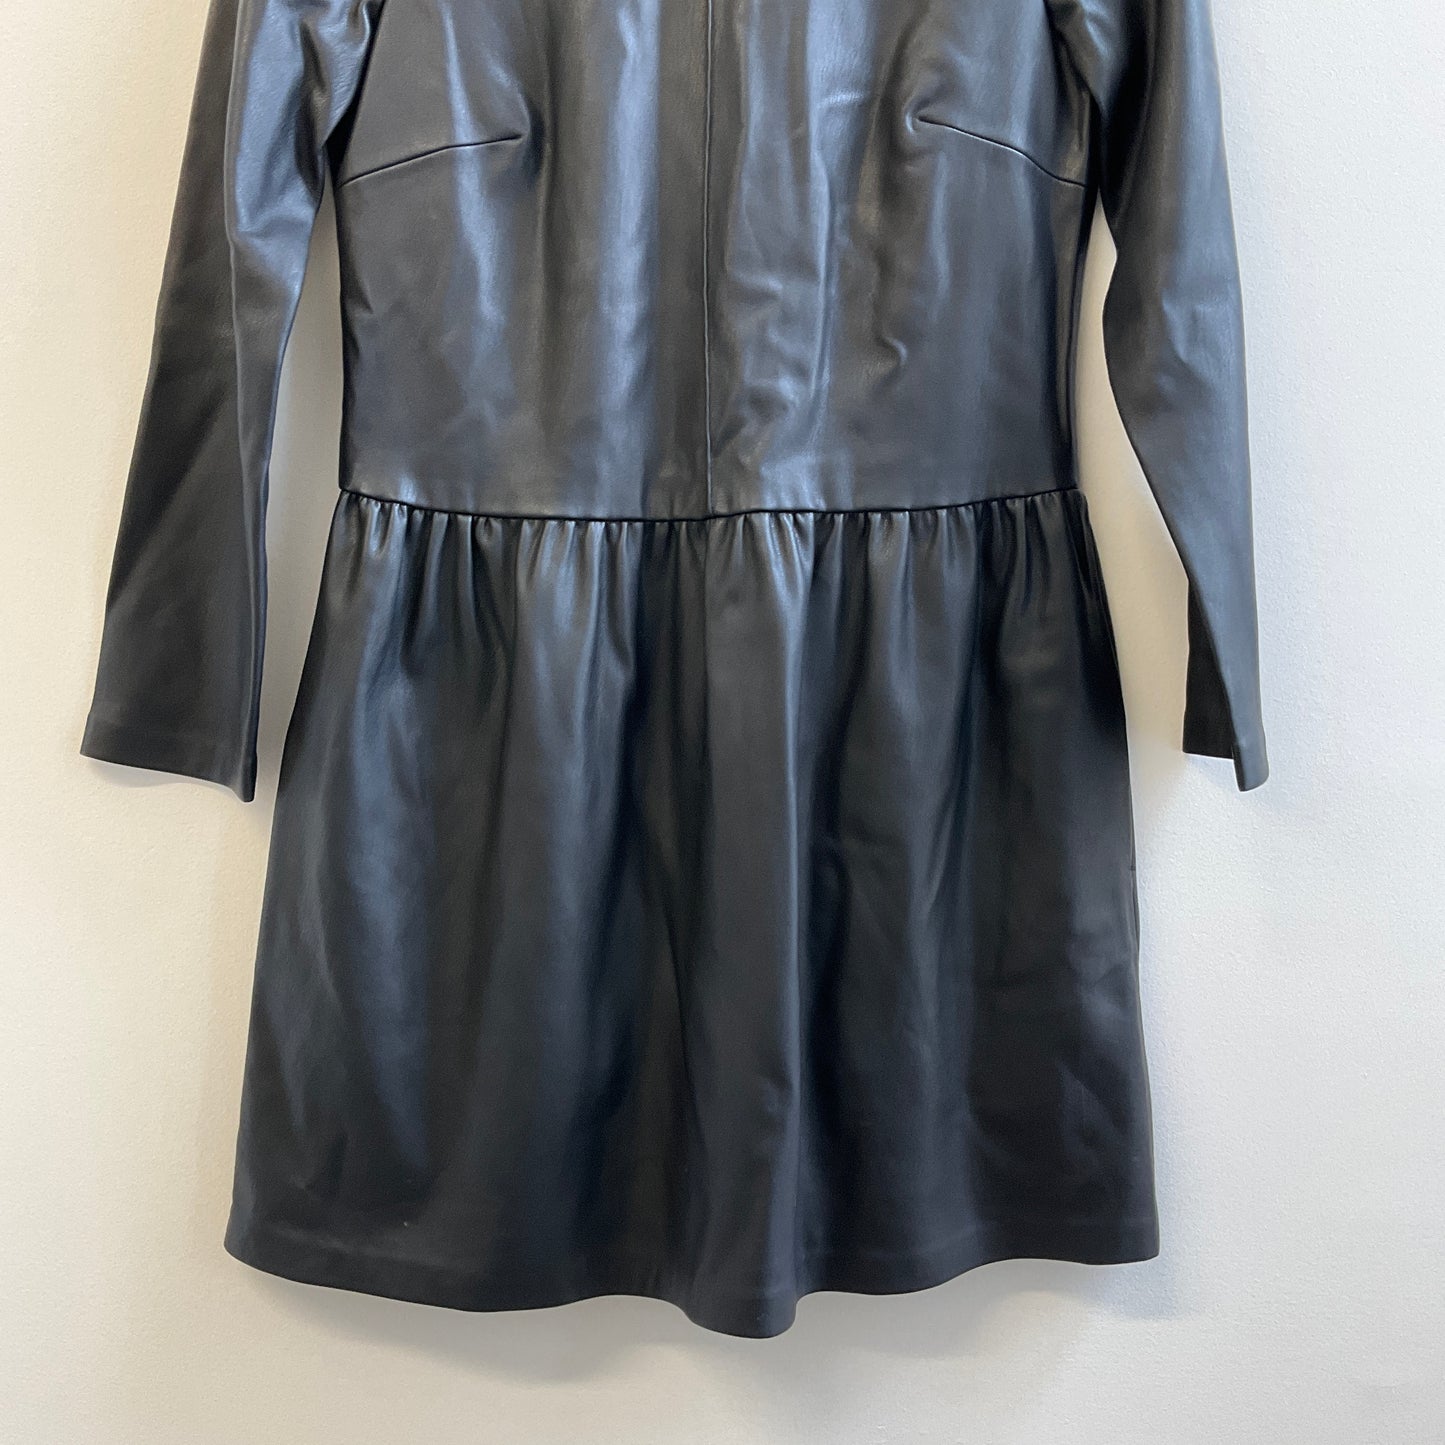 Zara - Faux Leather Dress